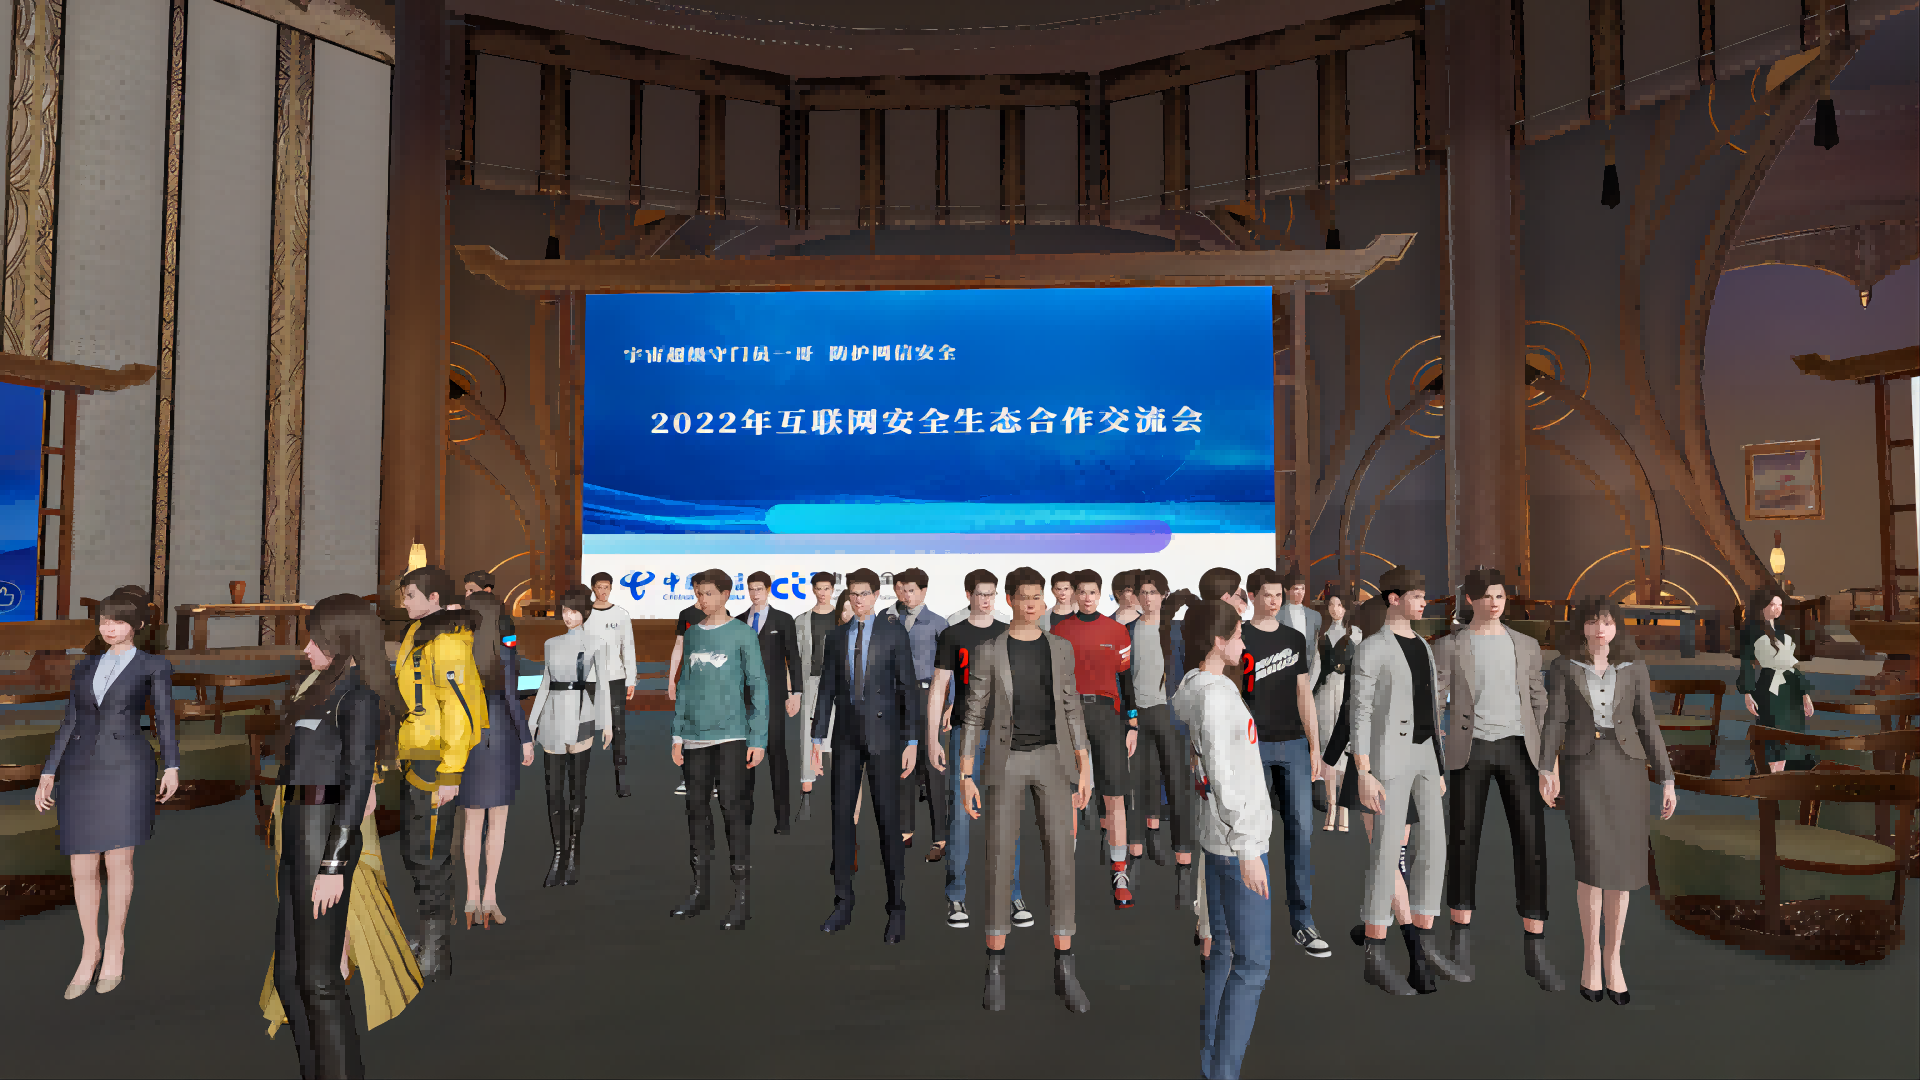 图片展示了一群穿着正式的人在一个室内场合，背景是一个显示2022年信息的大屏幕，似乎是在参加某个正式活动。